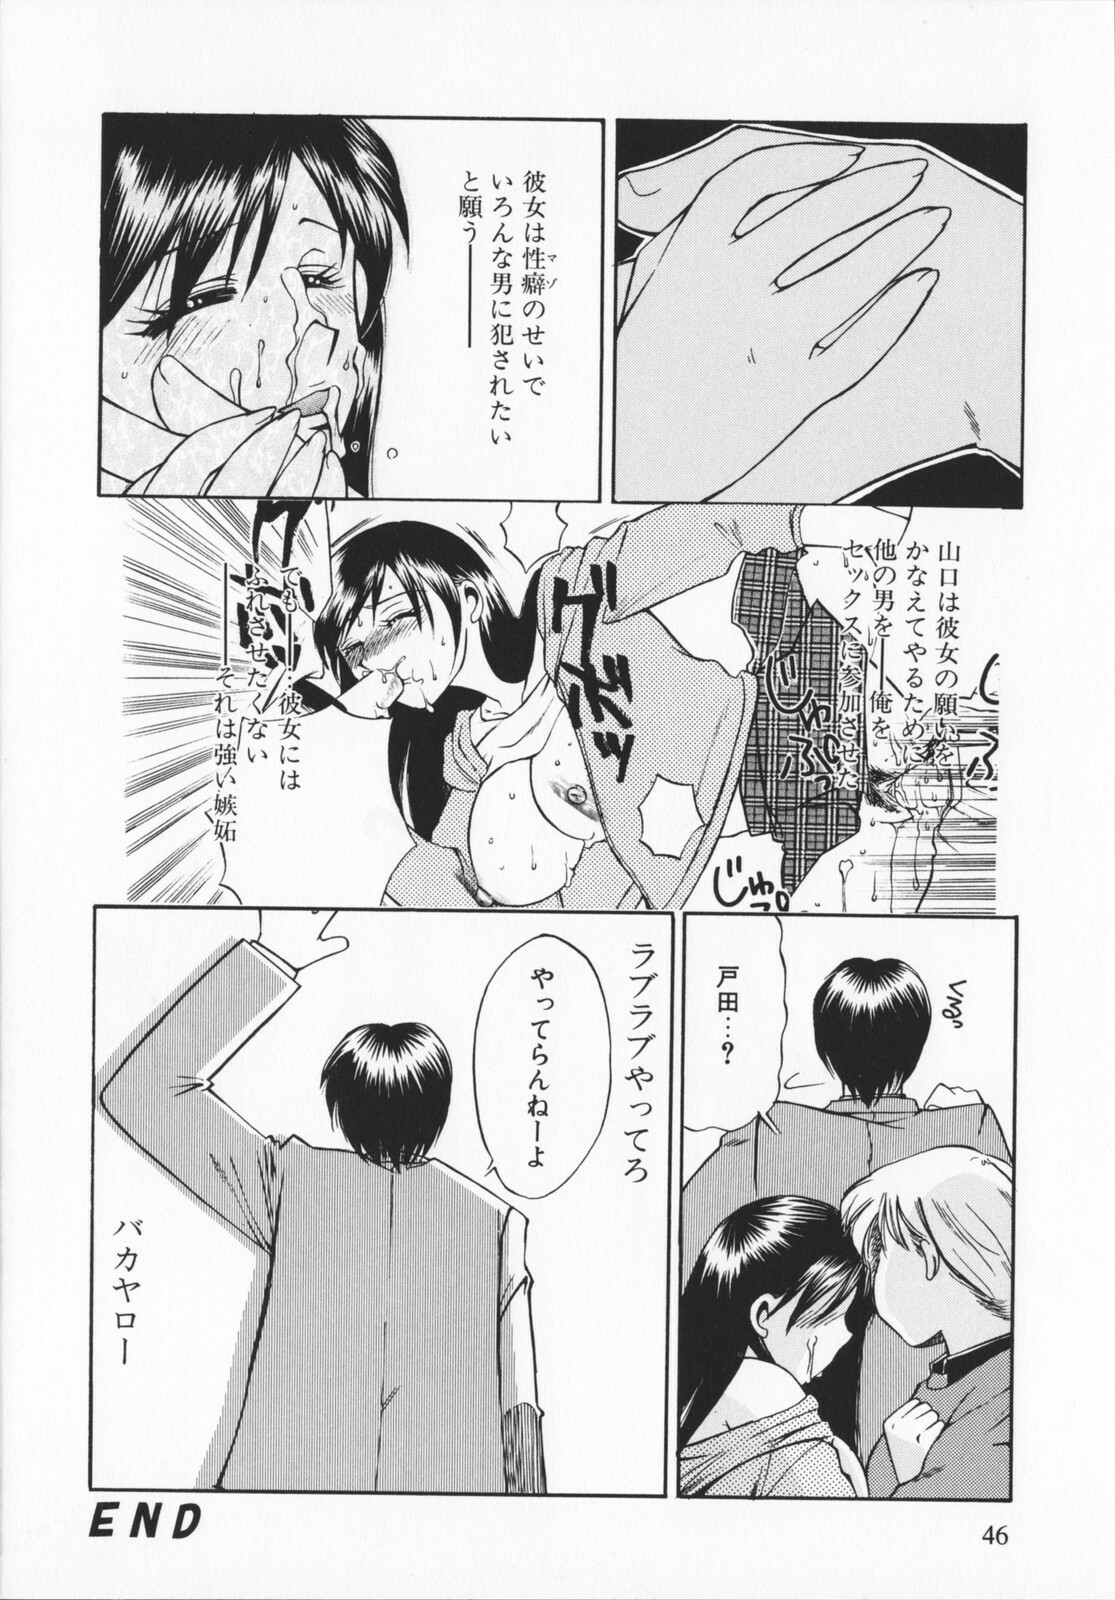 [Ureshino Megumi]Genkaiharetsu (LIMIT EXPLOSION) page 45 full